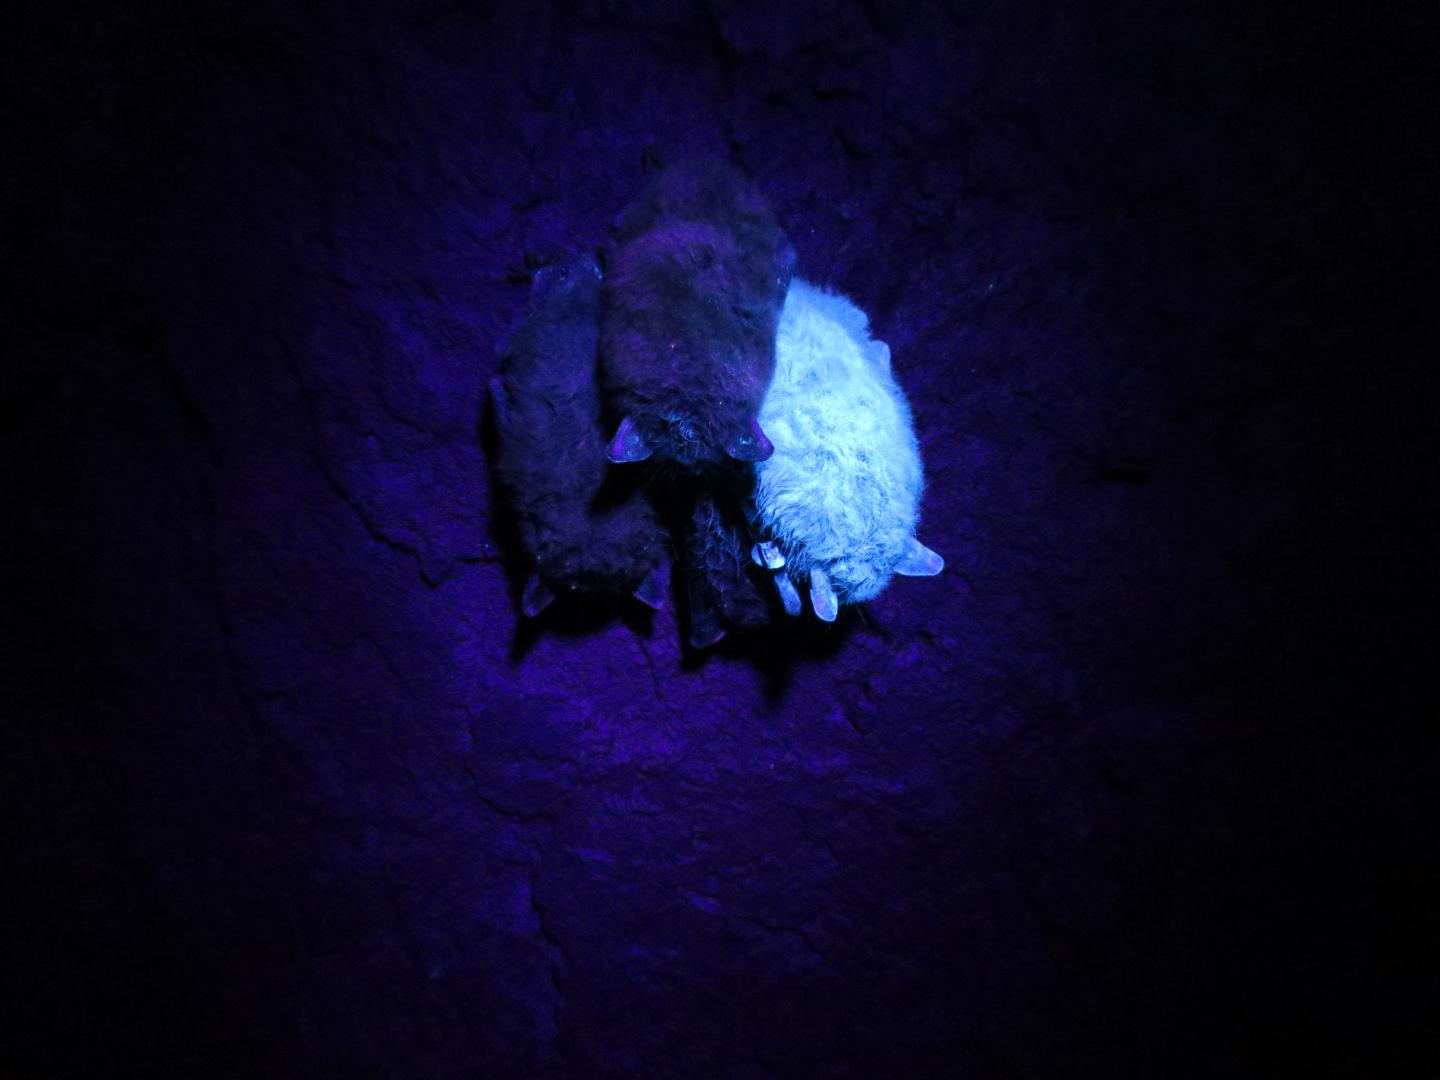 Bat with Fluorescent Powder